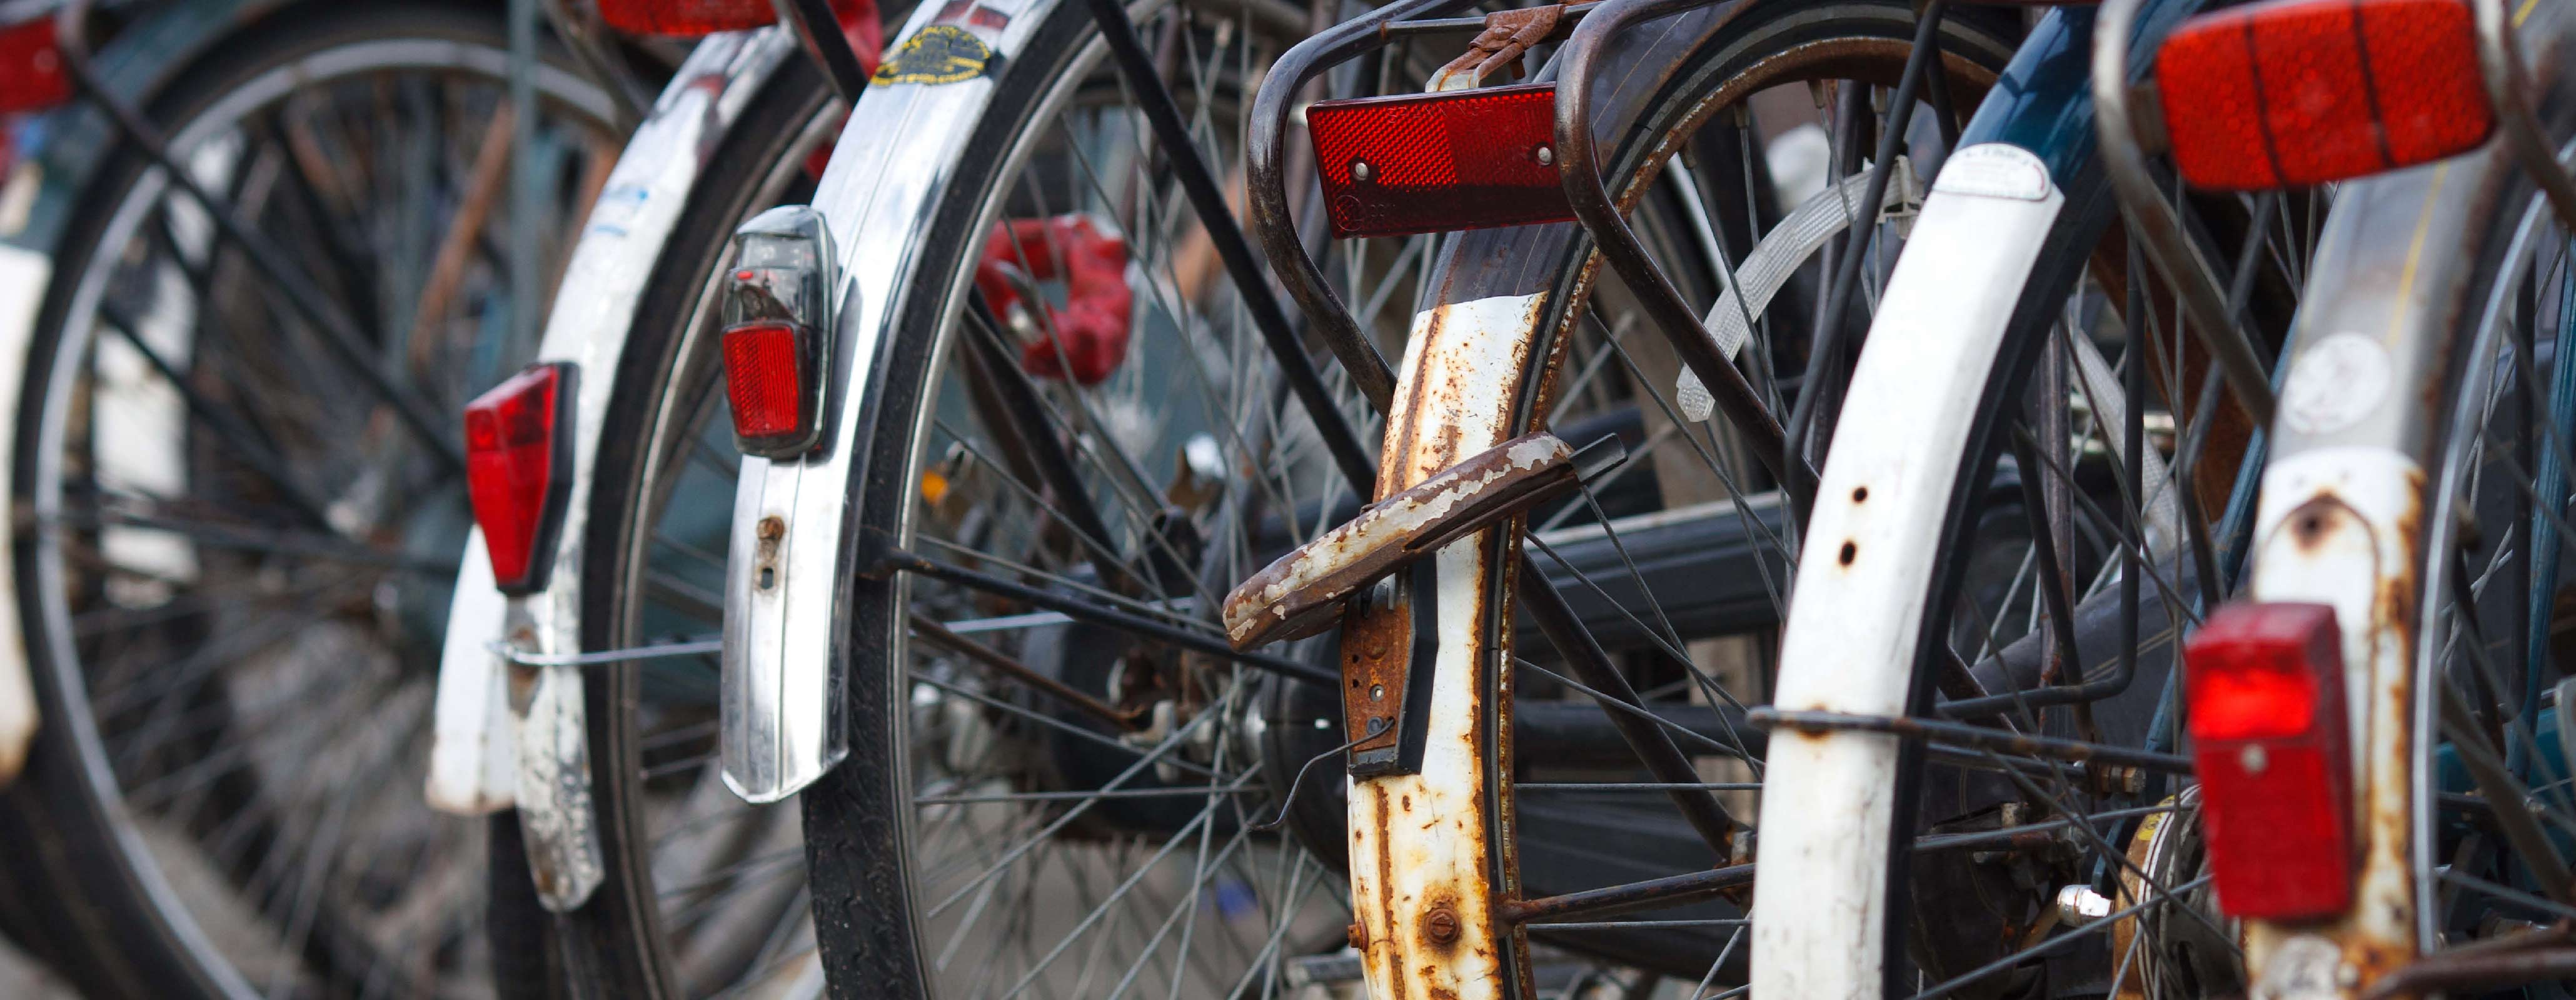 Cadeau Stevenson Vooruitzicht Hoe raakt u uw oude fiets kwijt? - Centraal Beheer Magazine